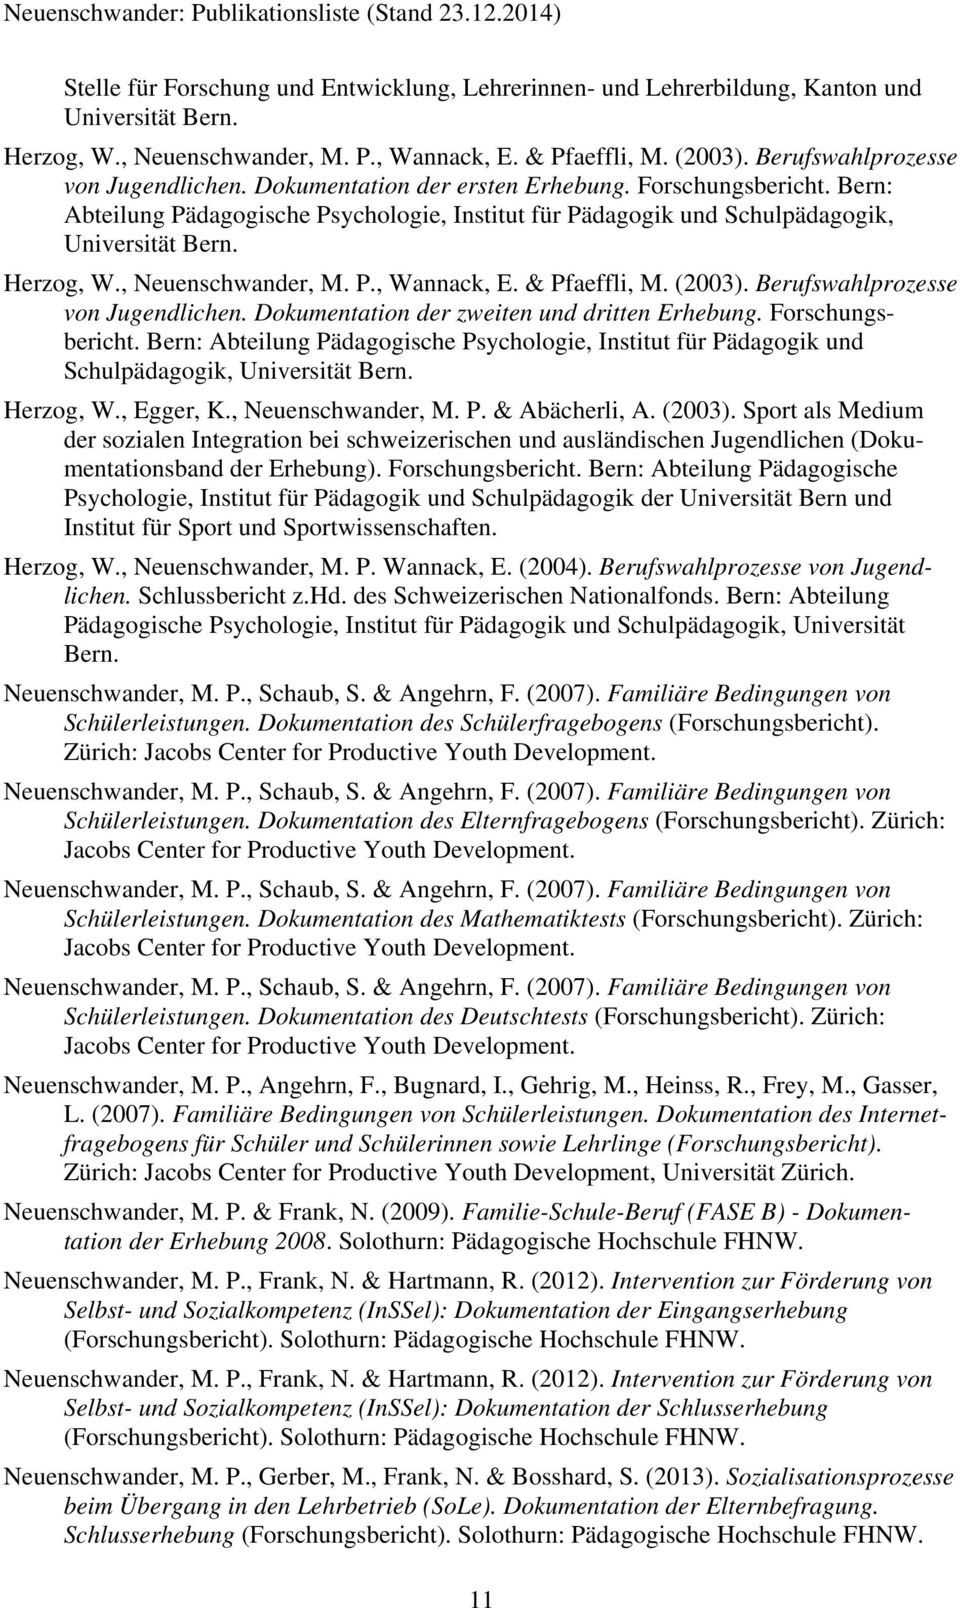 Herzog, W., Neuenschwander, M. P., Wannack, E. & Pfaeffli, M. (2003). Berufswahlprozesse von Jugendlichen. Dokumentation der zweiten und dritten Erhebung. Forschungsbericht.